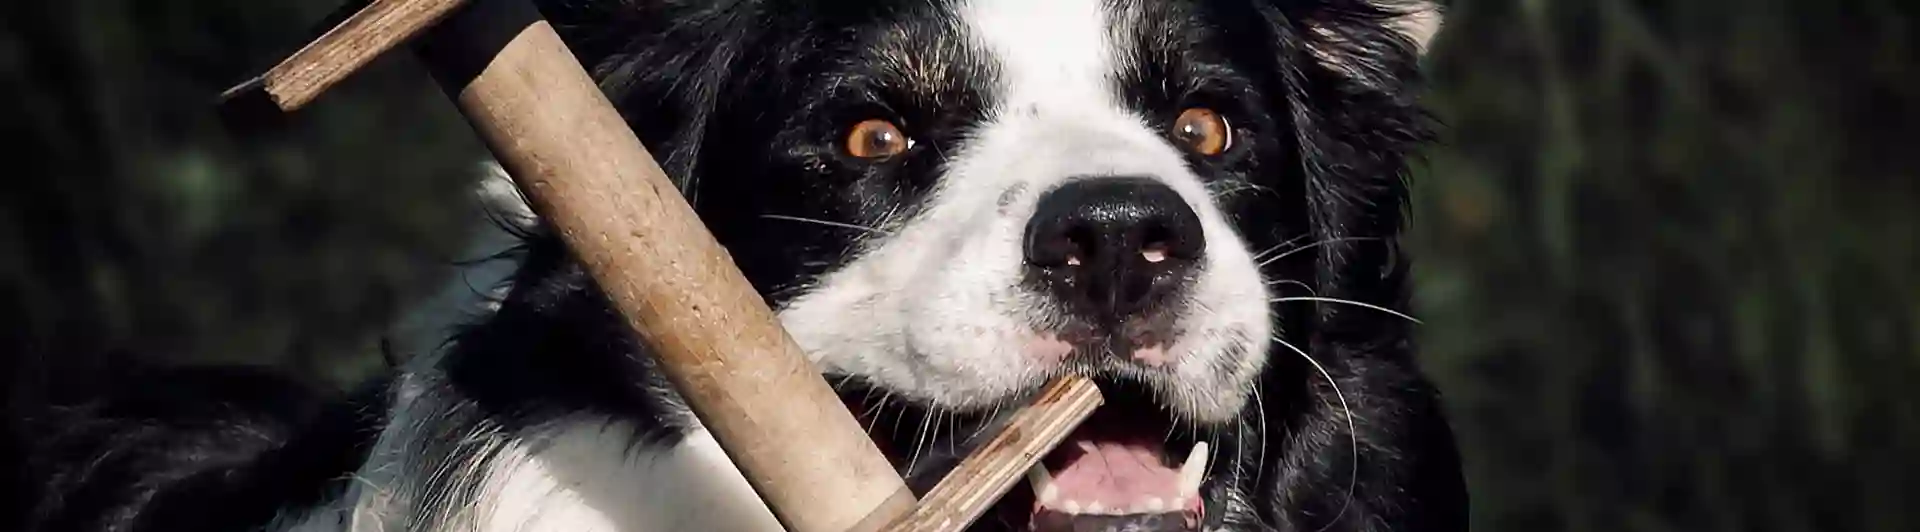 Hund med apportbock i munnen